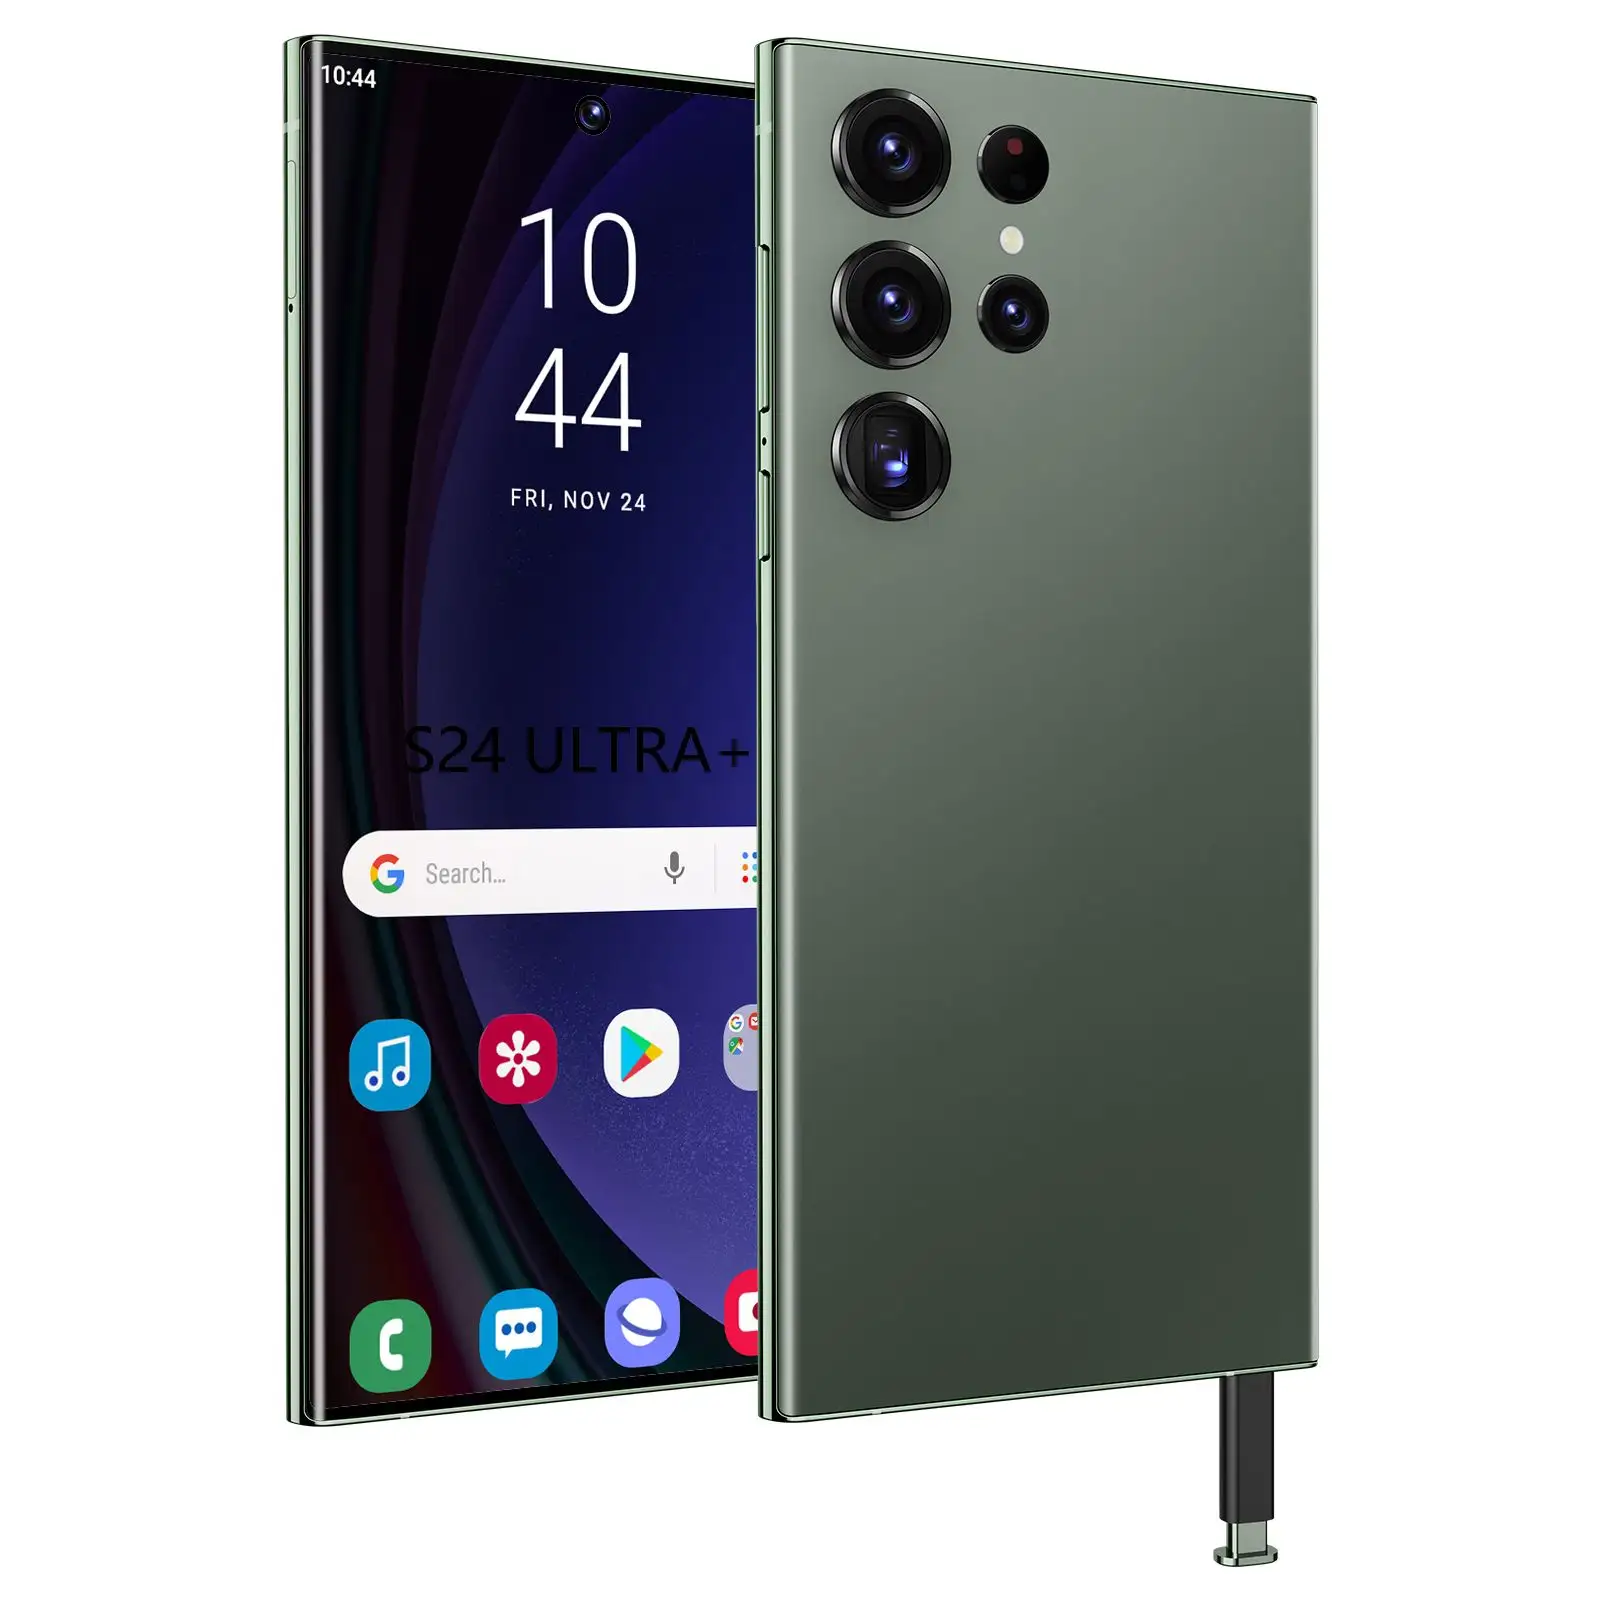 Hot Seller Gold Introduceert De Smart Phone Tecno Op Ons Wereldwijde Digitale Exportserviceplatform S24 Ultra